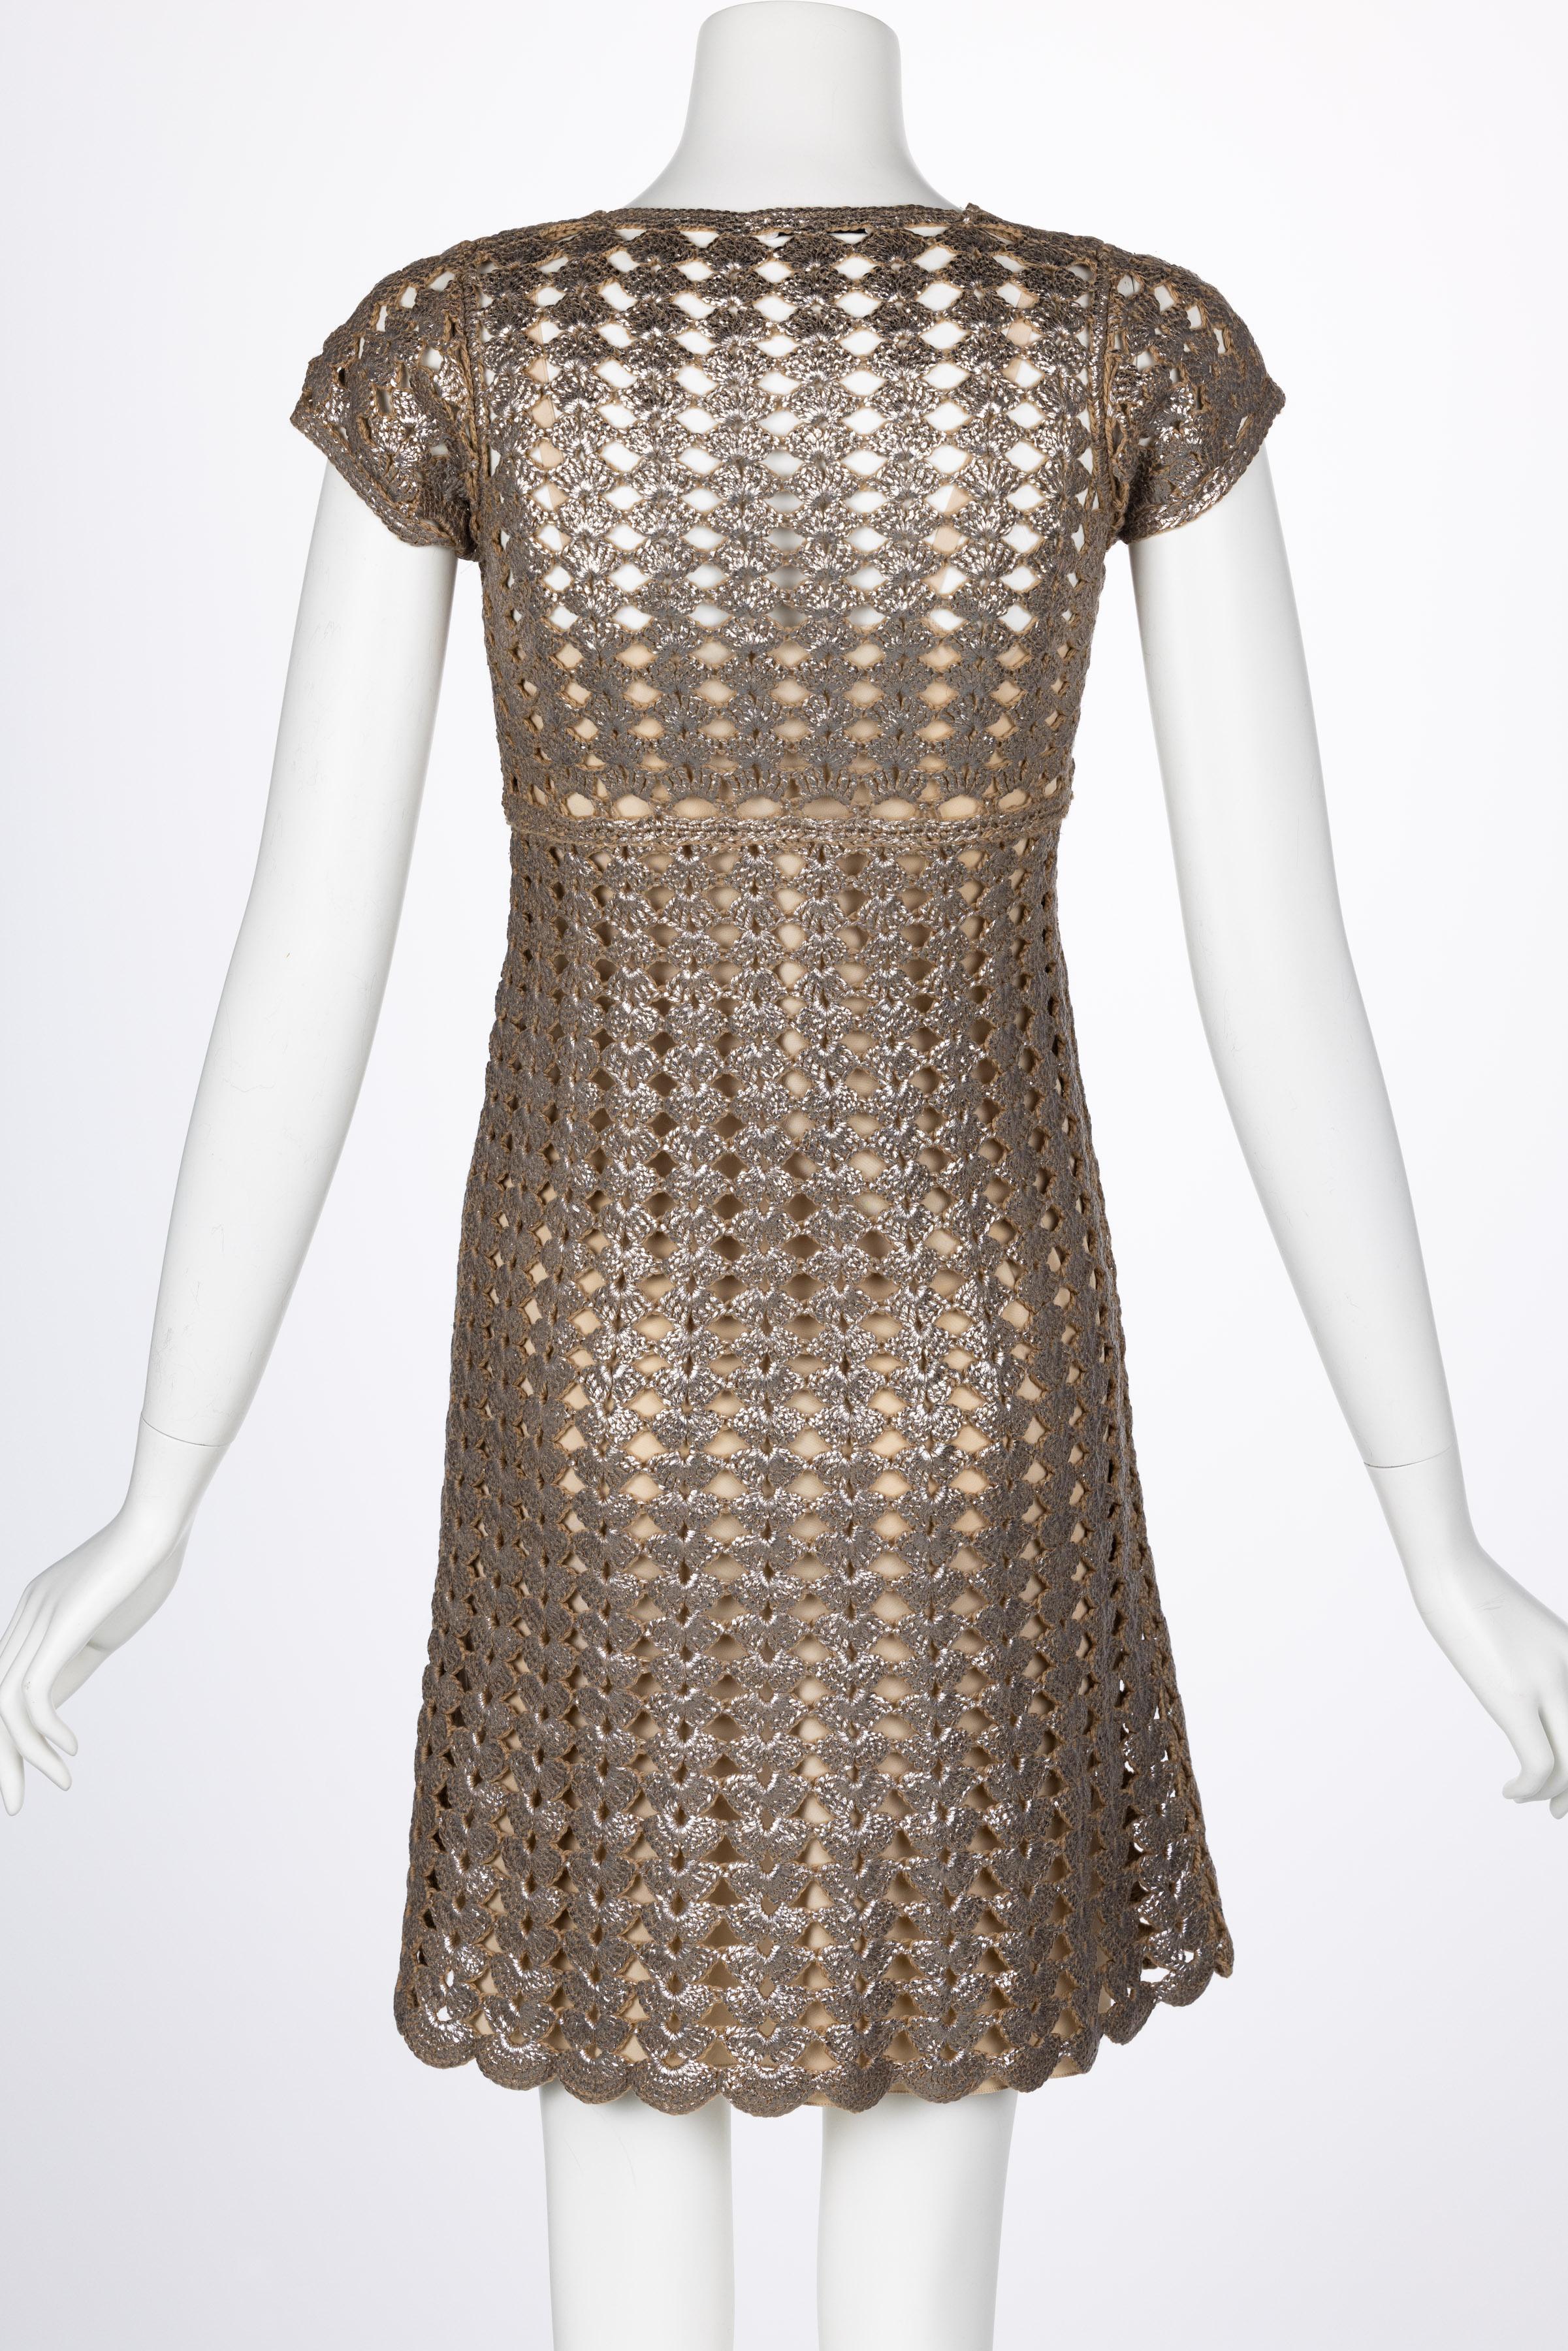 Prada Bronze Metallic Crochet Dress, 2000s In Excellent Condition For Sale In Boca Raton, FL